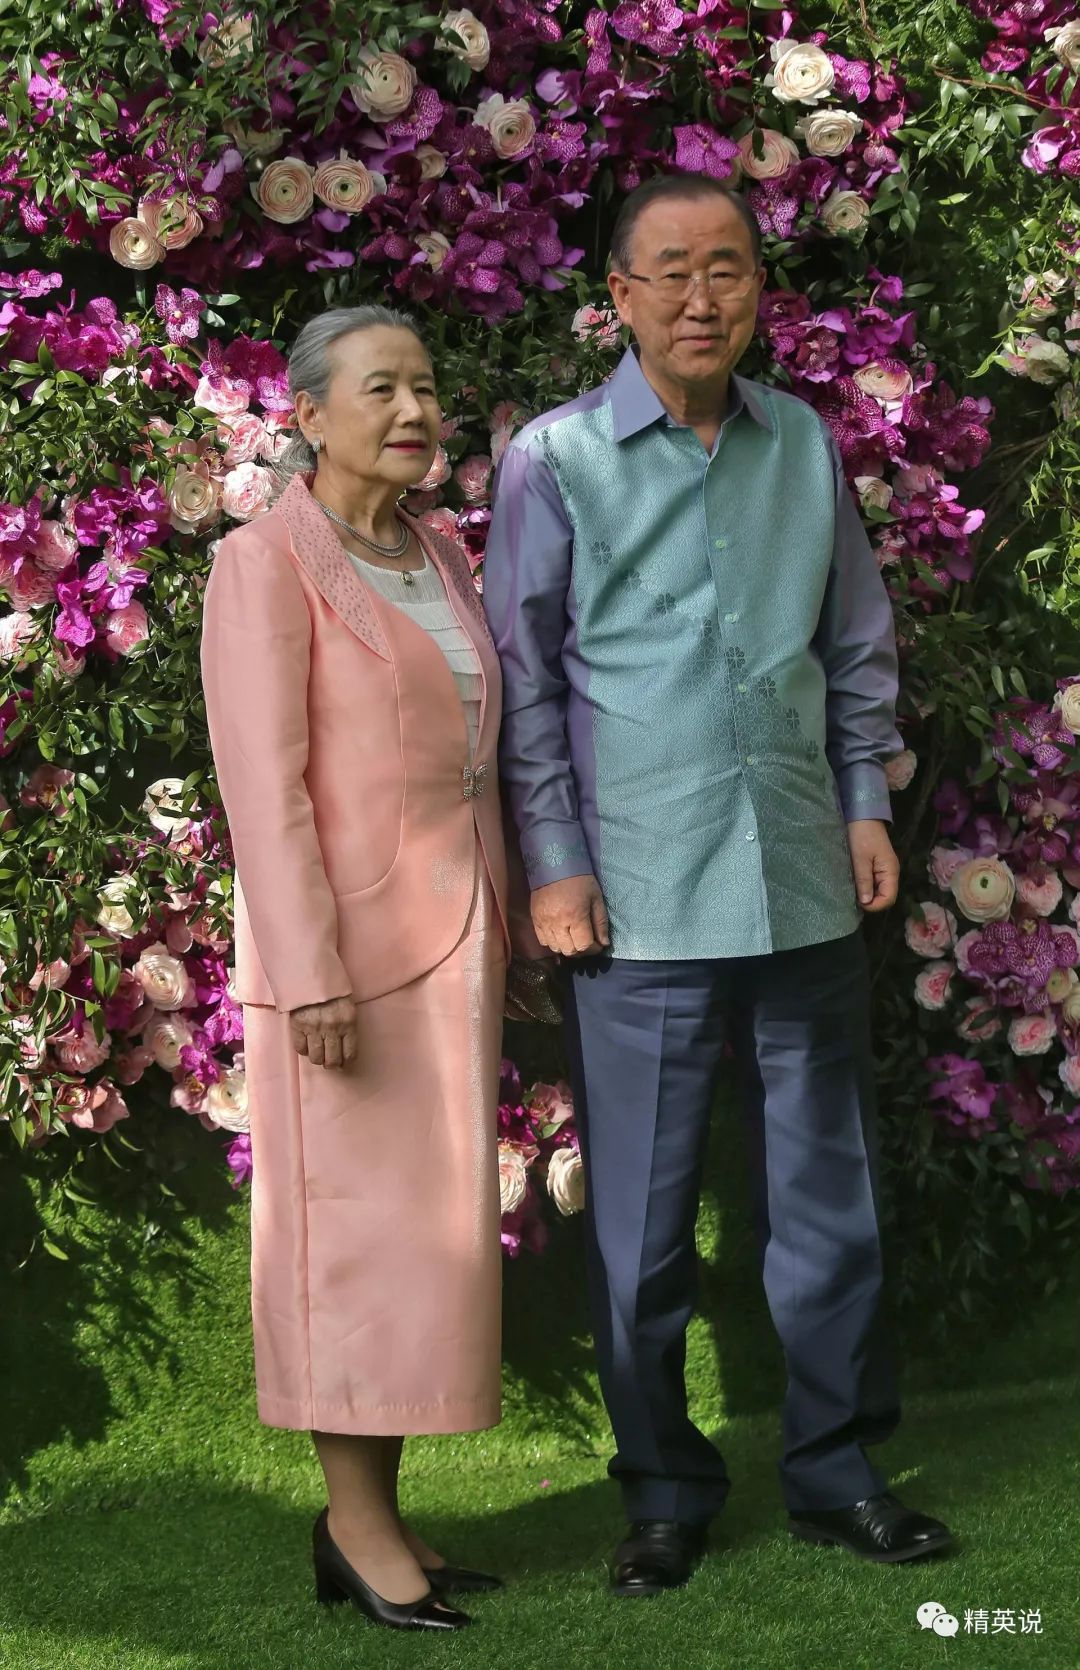 还有前联合国秘书长潘基文和他的妻子yoo soon